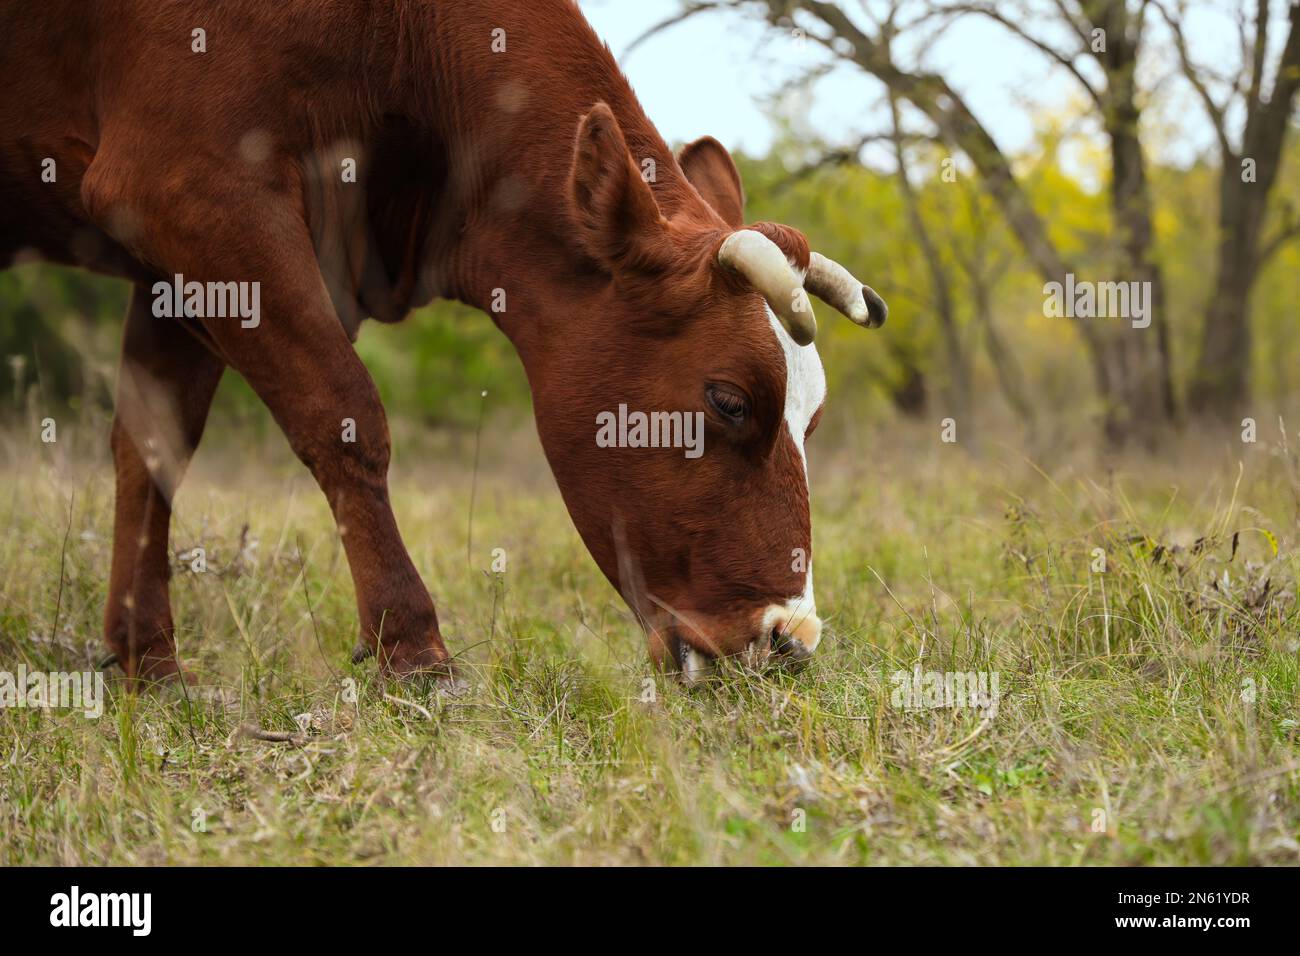 https://c8.alamy.com/comp/2N61YDR/cow-grazing-on-green-meadow-farm-animal-2N61YDR.jpg